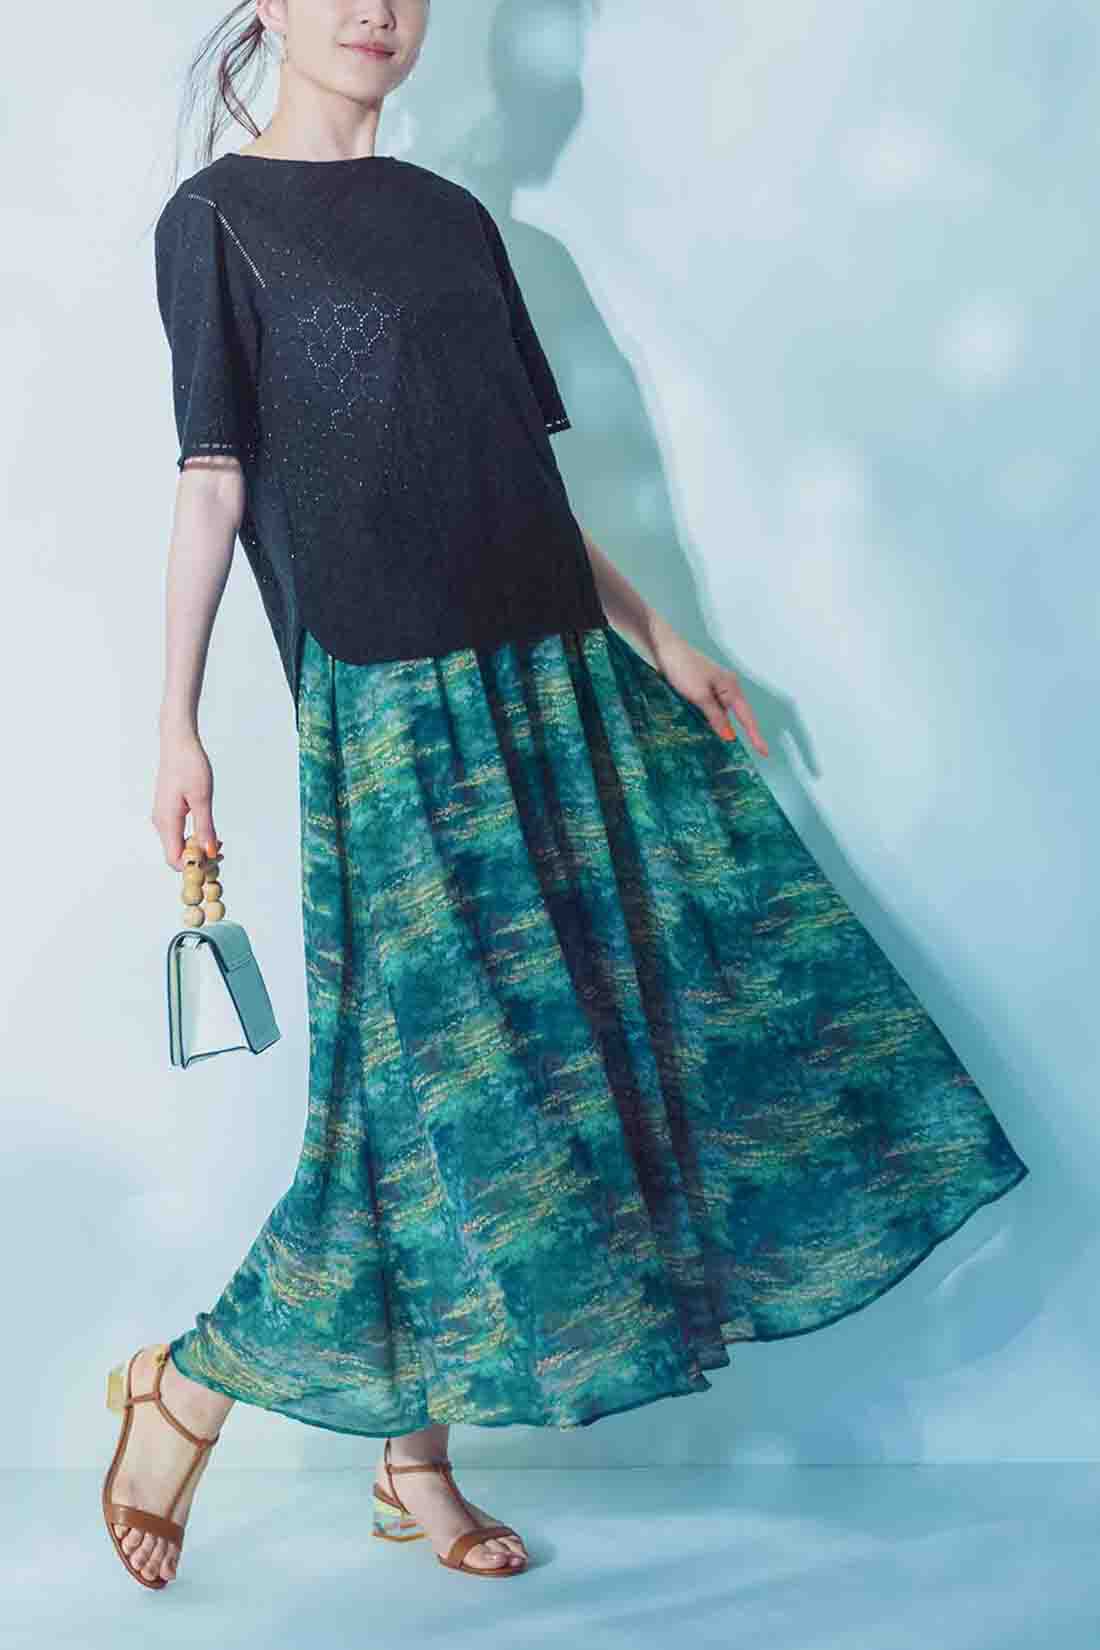 IEDIT|IEDIT[イディット]　モネの睡蓮をまとうシフォンスカート〈グリーン〉|※着用イメージです。お届けするカラーとは異なります。